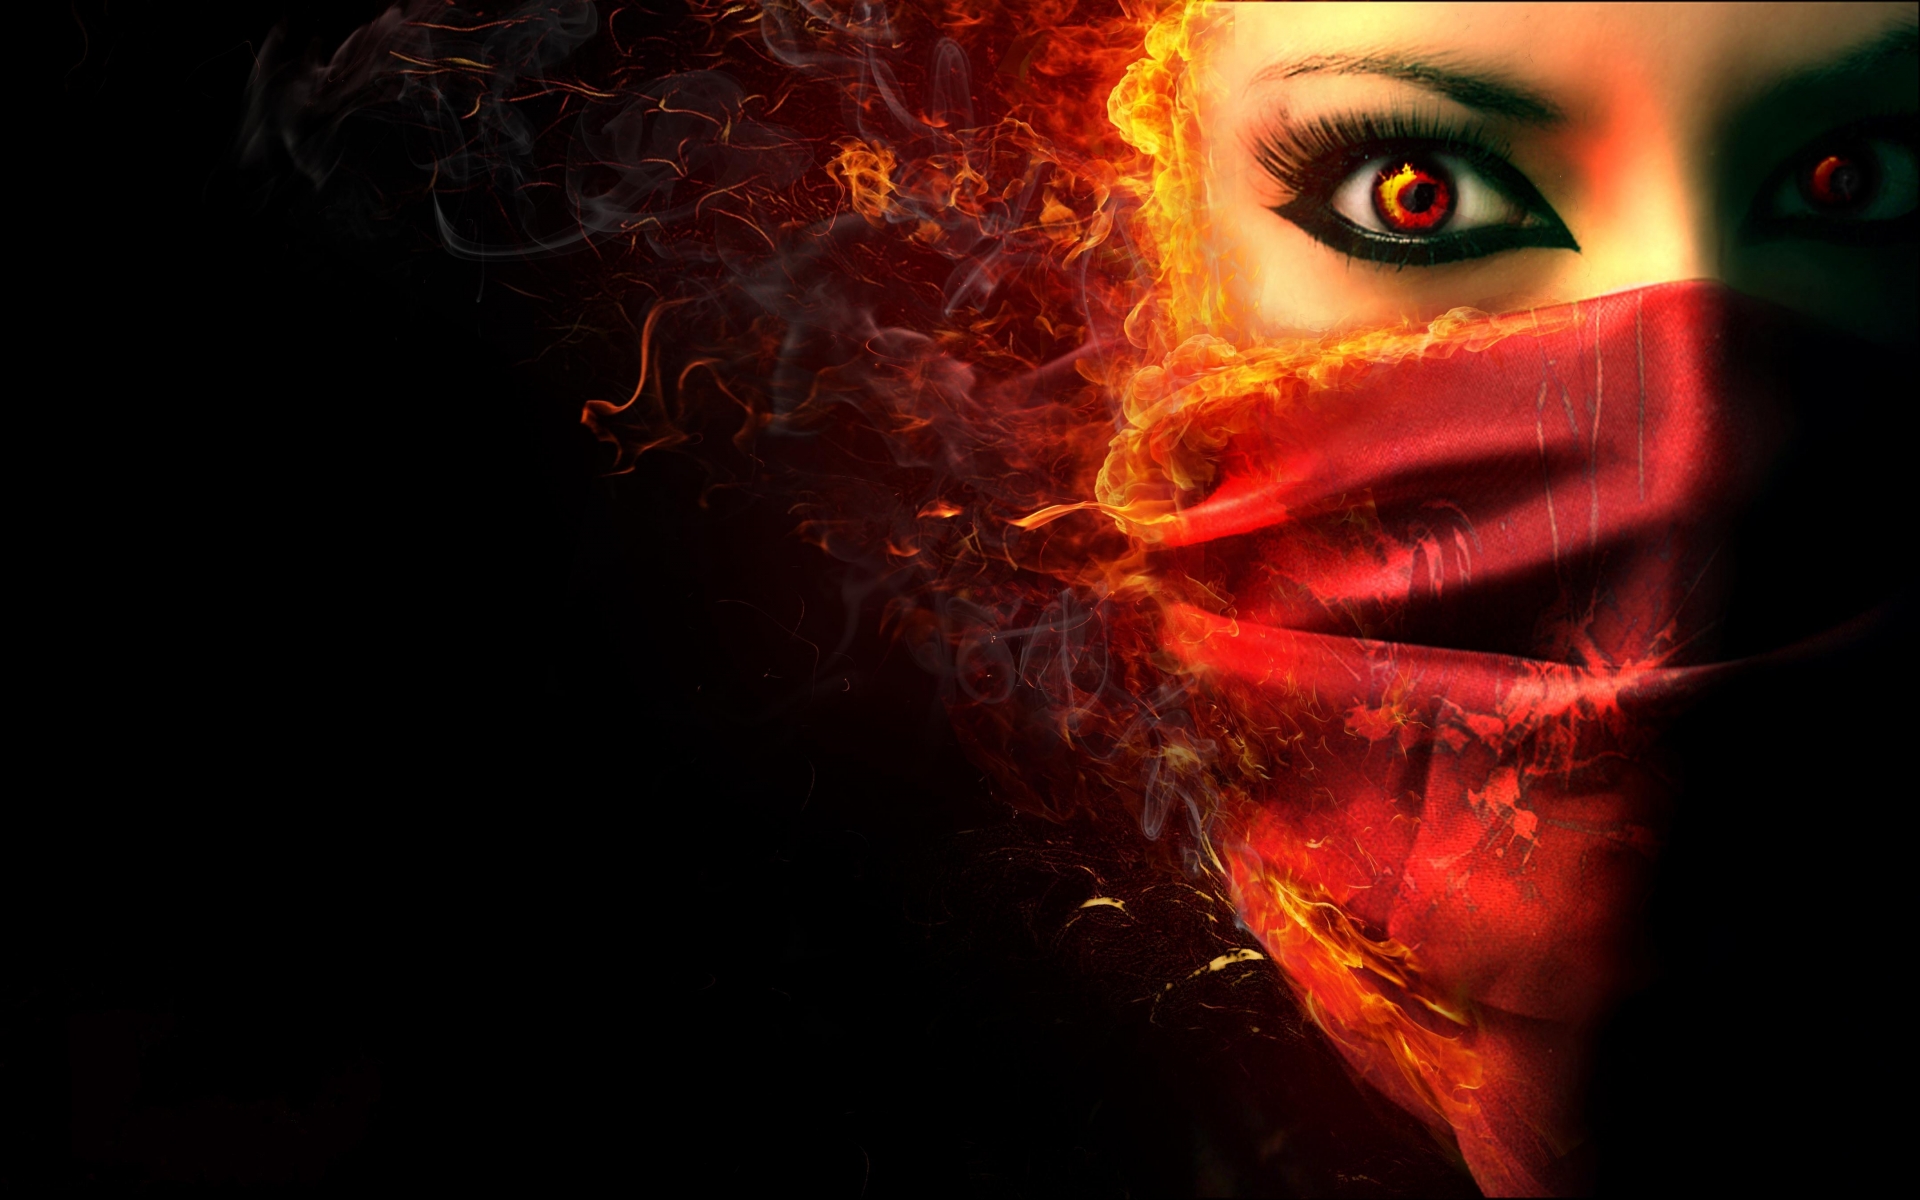 fantasy dark horror face demon evil women wallpaper background